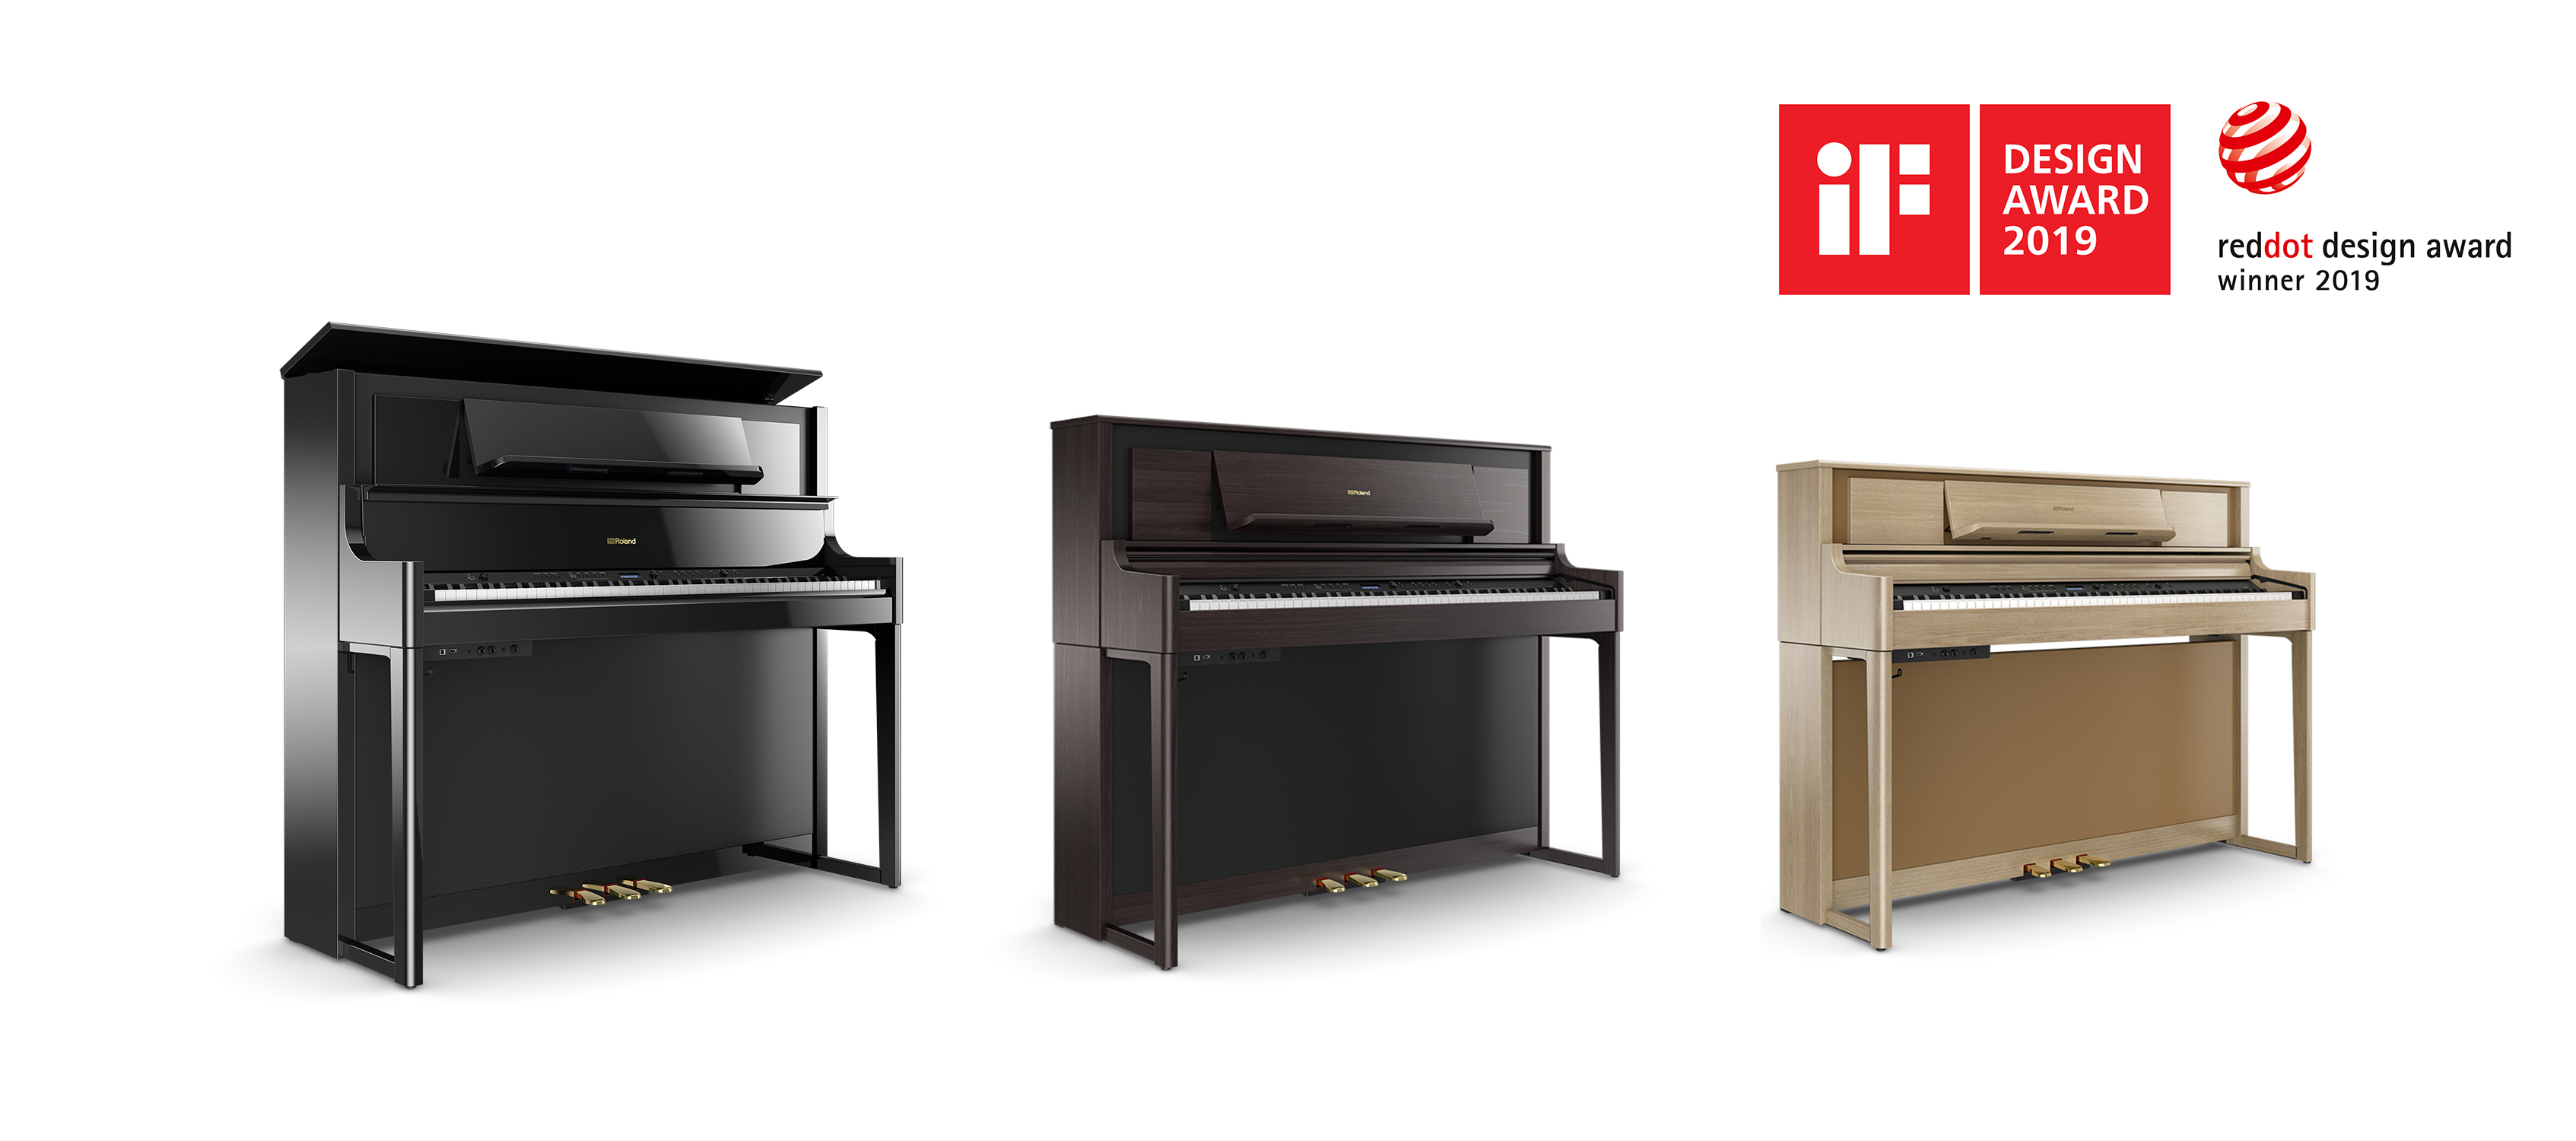 デジタルピアノ『LX700シリーズ』が「iFデザイン賞2019」と「レッド